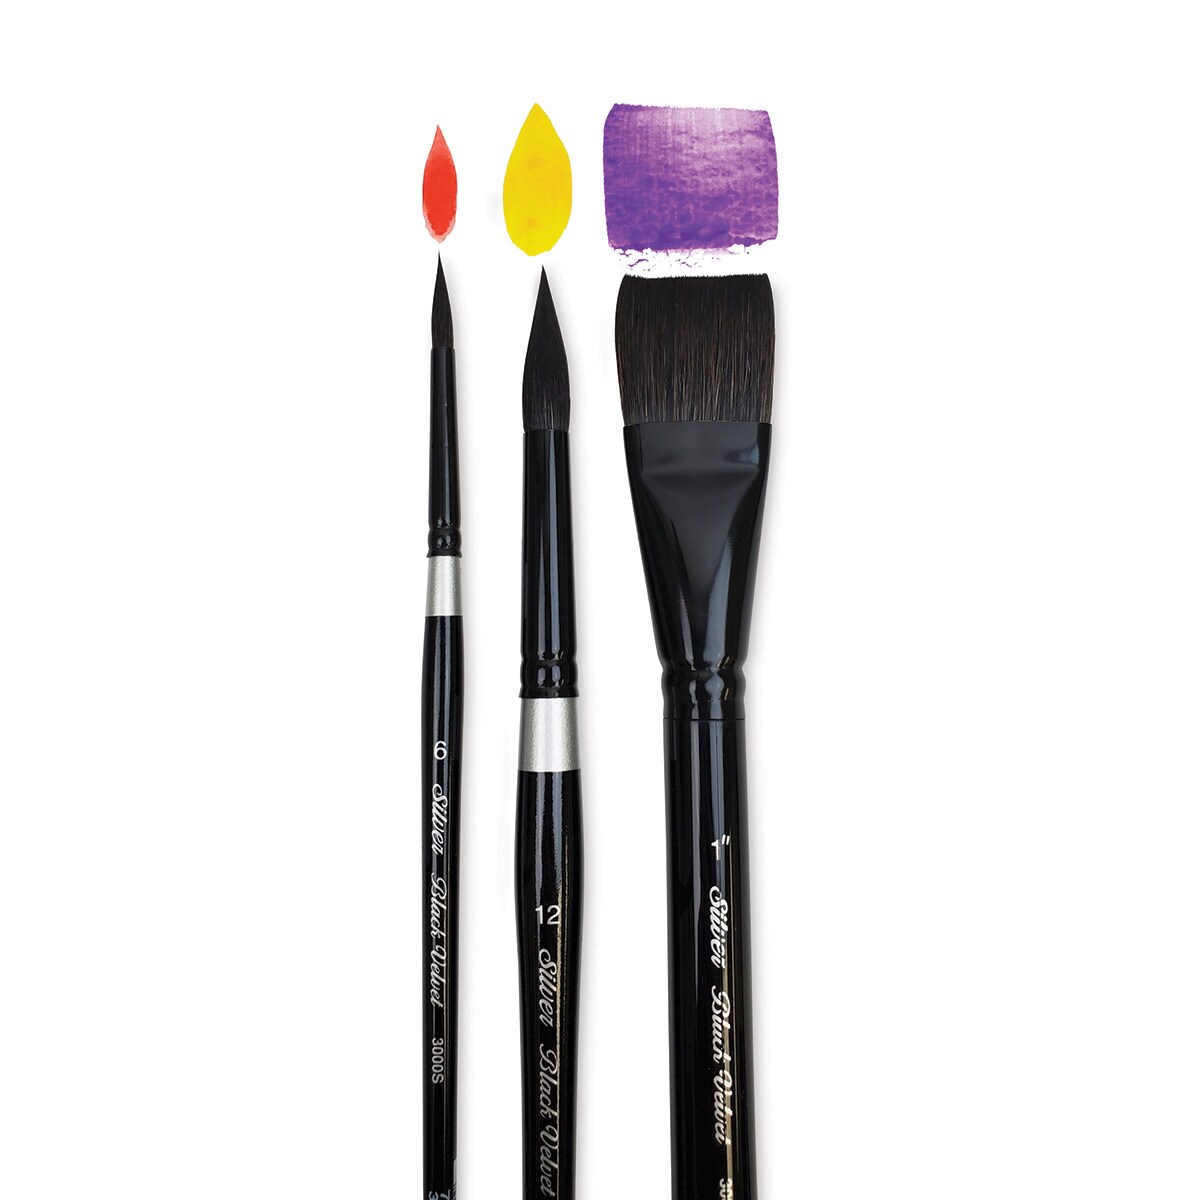 Silver Brush Black Velvet Watercolor Brush Dagger Striper 3/8 - Wet Paint  Artists' Materials and Framing